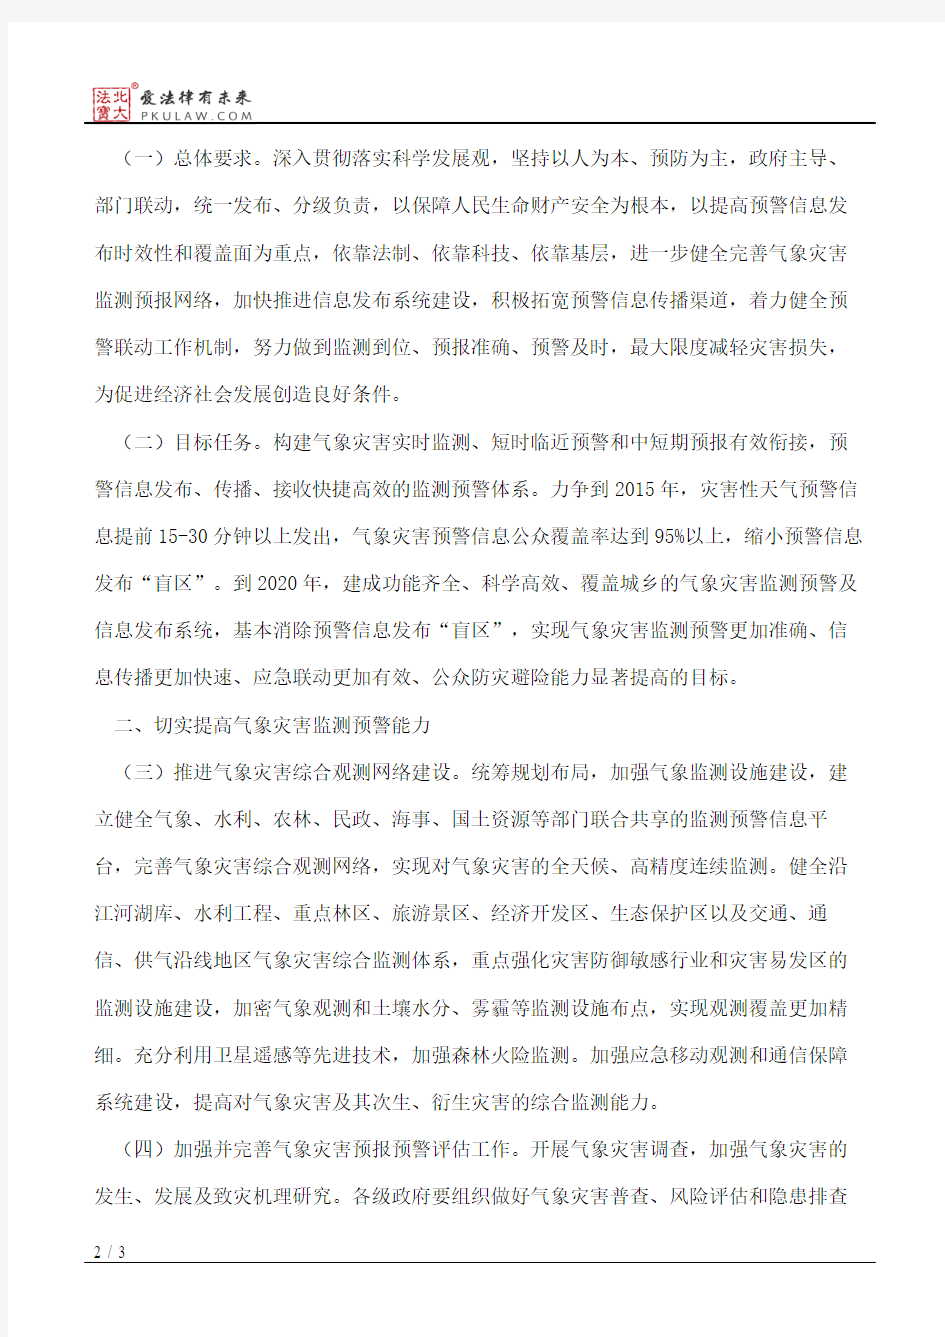 南京市人民政府办公厅关于加强气象灾害监测预警及信息发布工作的